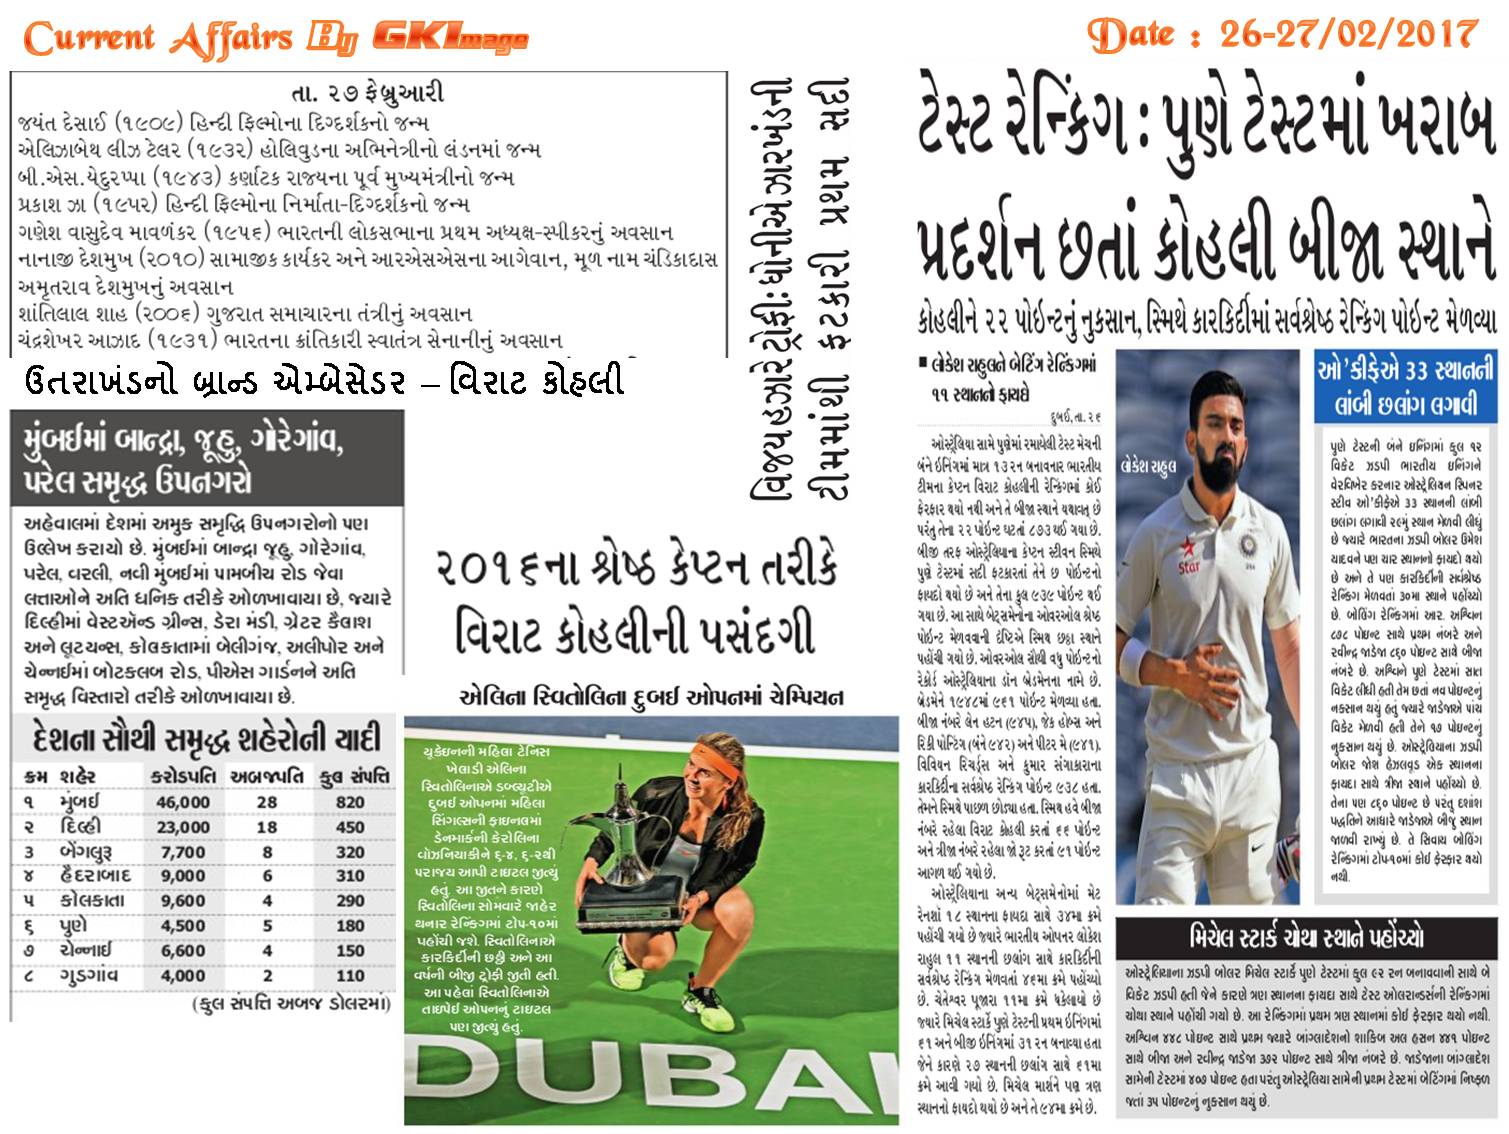 26 27 Feb Daily Current Affairs In Gujarati Newspaper General